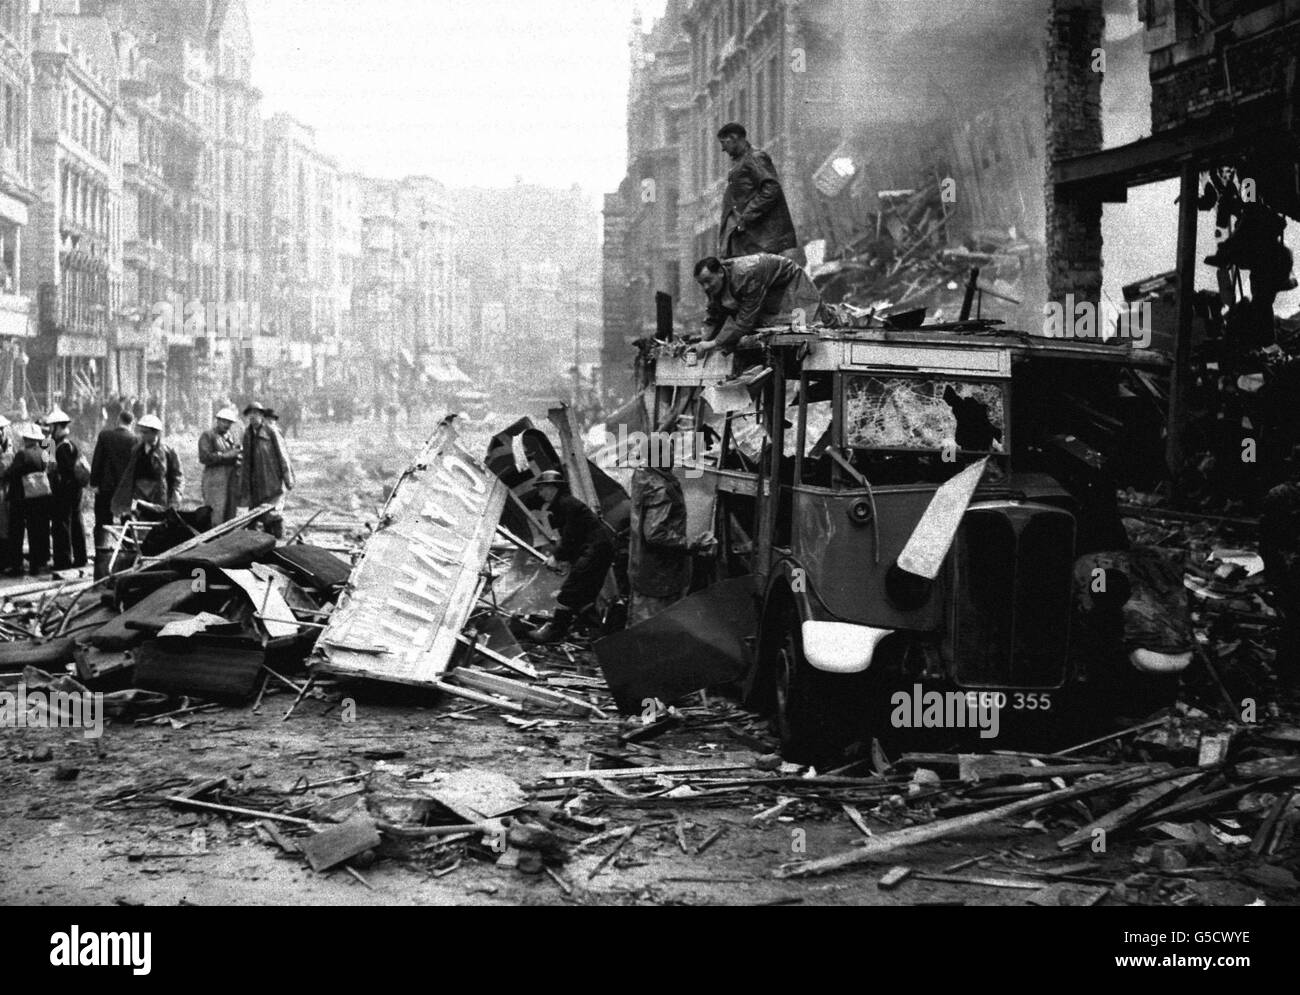 Les secouristes se rendent dans un bus gravement endommagé à High Holborn, Londres, au milieu des dégâts causés par un raid de la Luftwaffe pendant la séance éclair. Banque D'Images